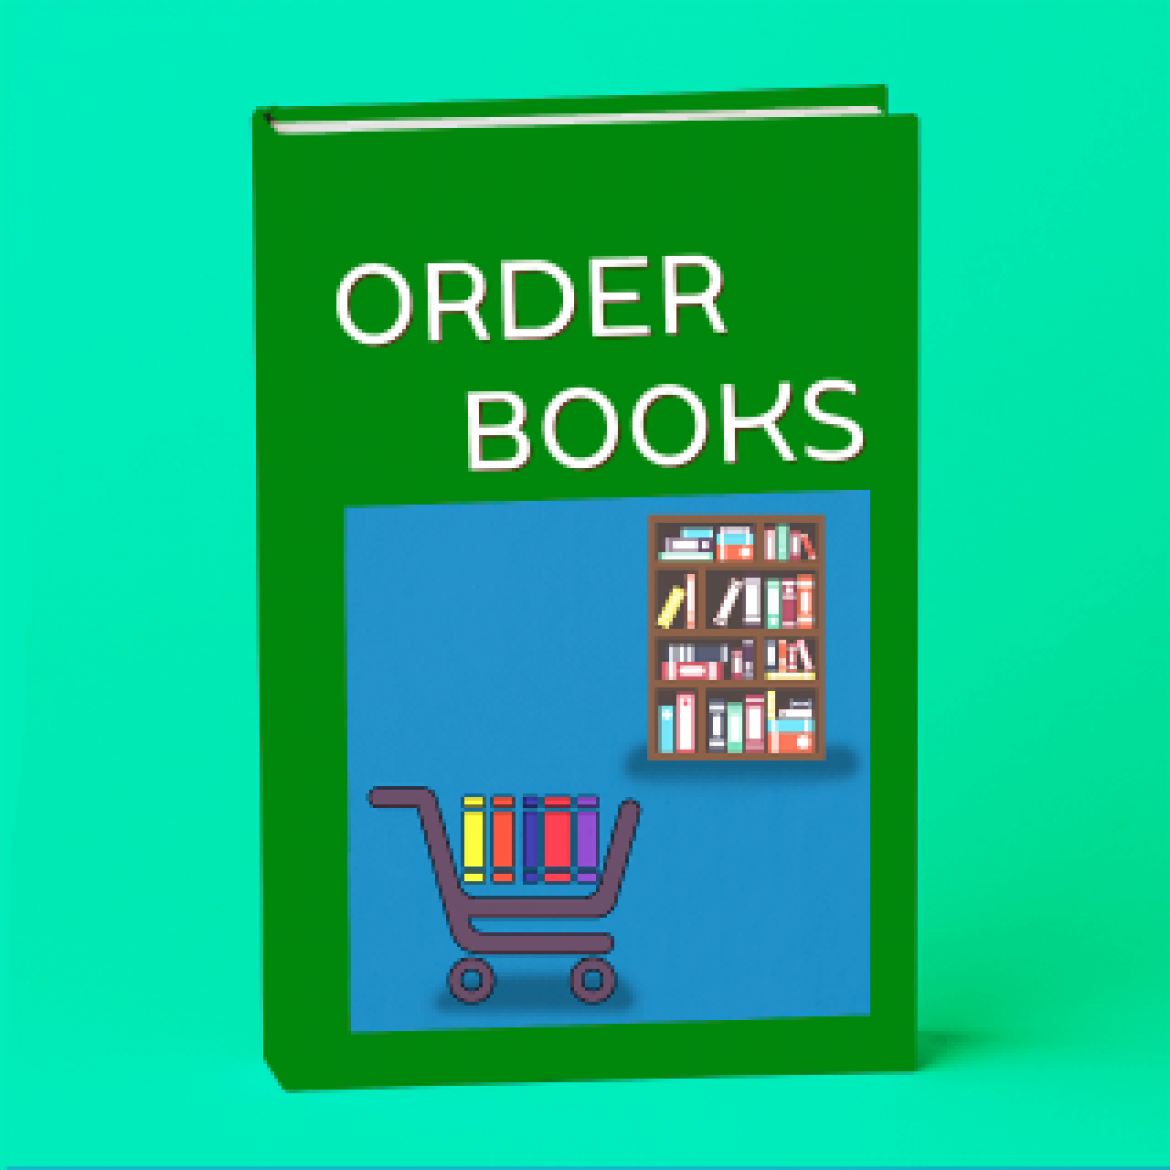 บริการสั่ง-ยืมหนังสือออนไลน์ และมารับตัวเล่ม Order Books